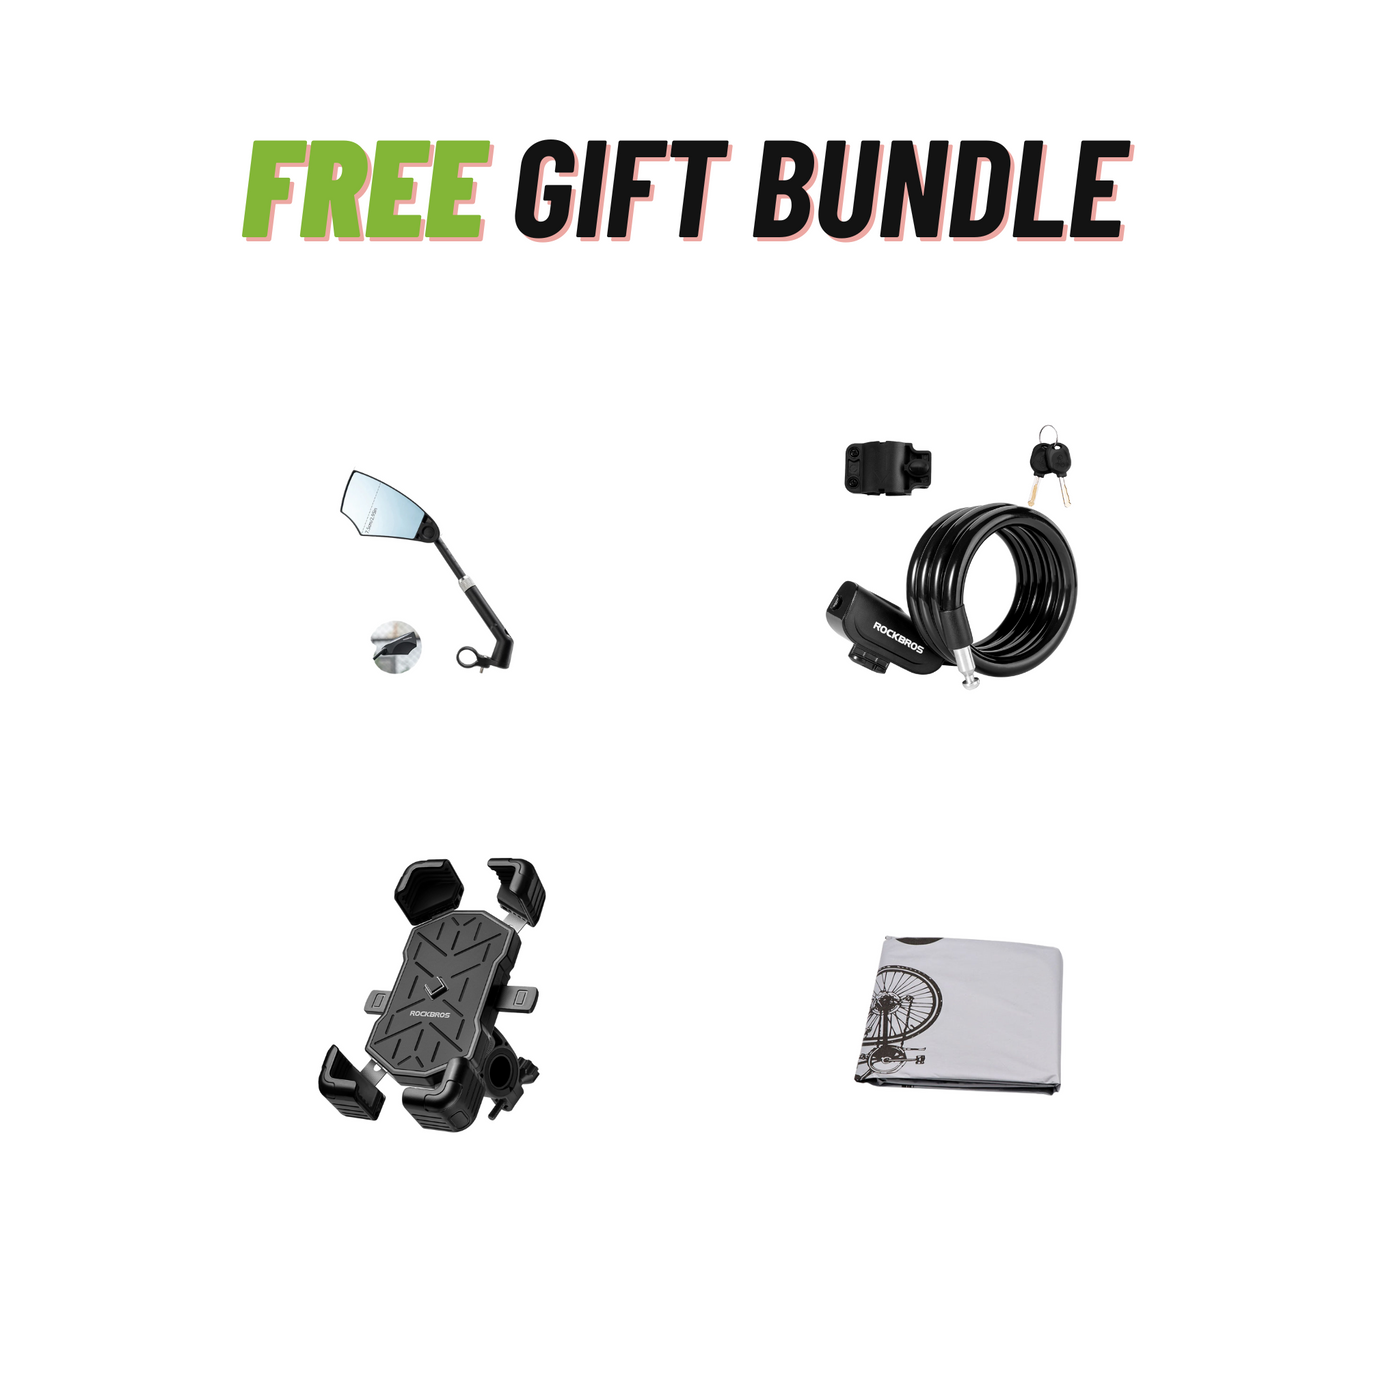 Aventon E-Bike Free Gift Bundle